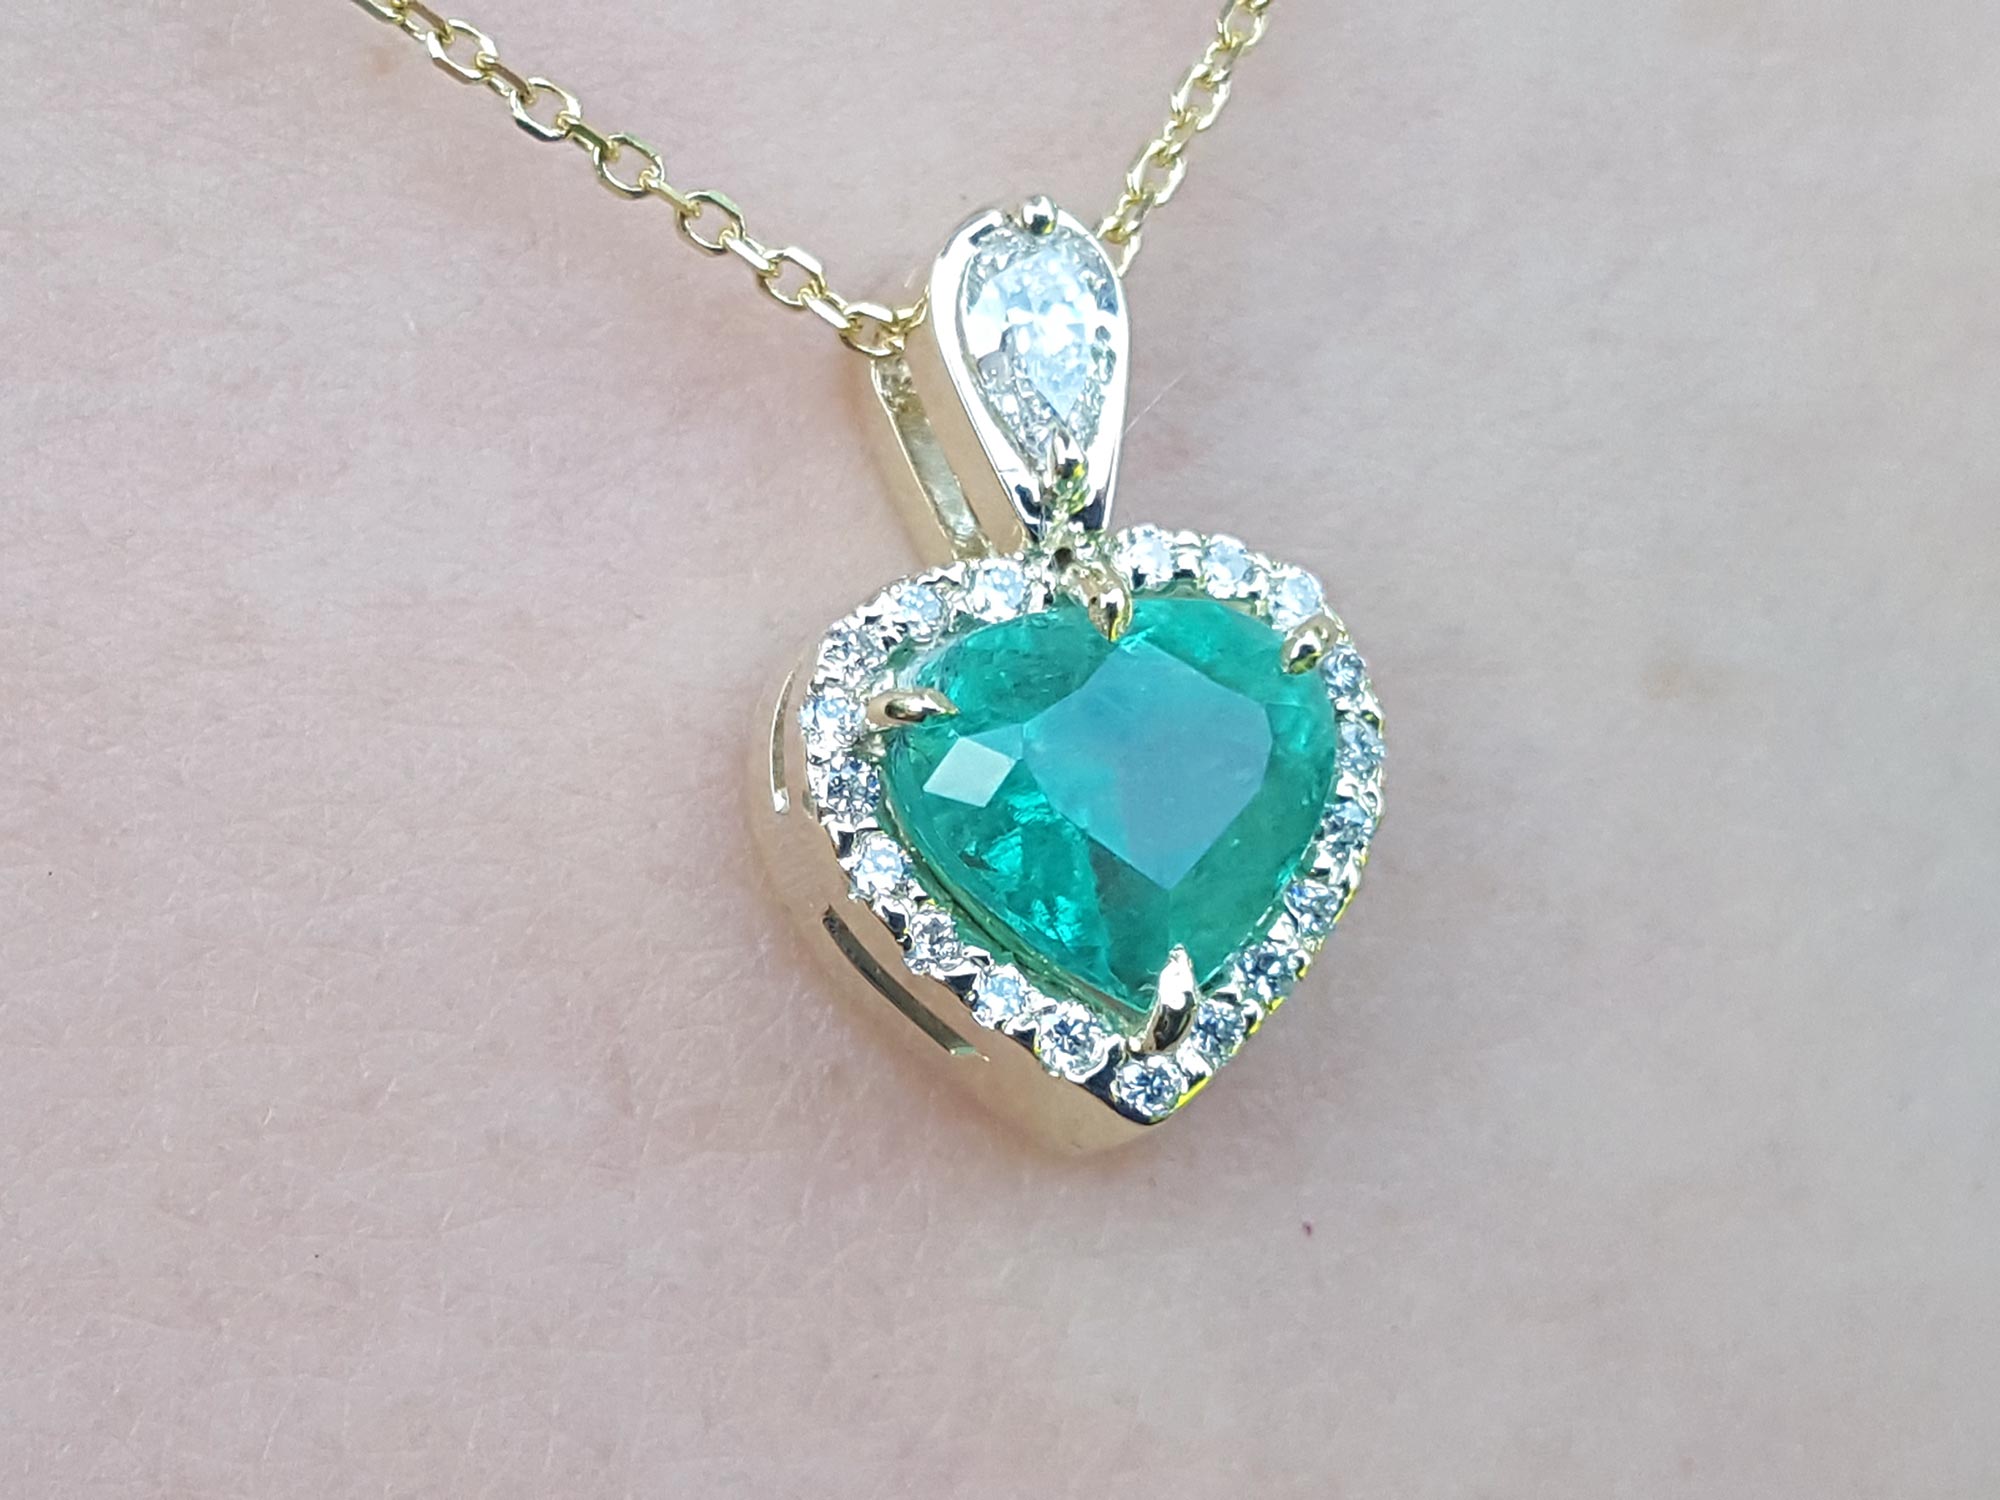 Emerald stone pendant,